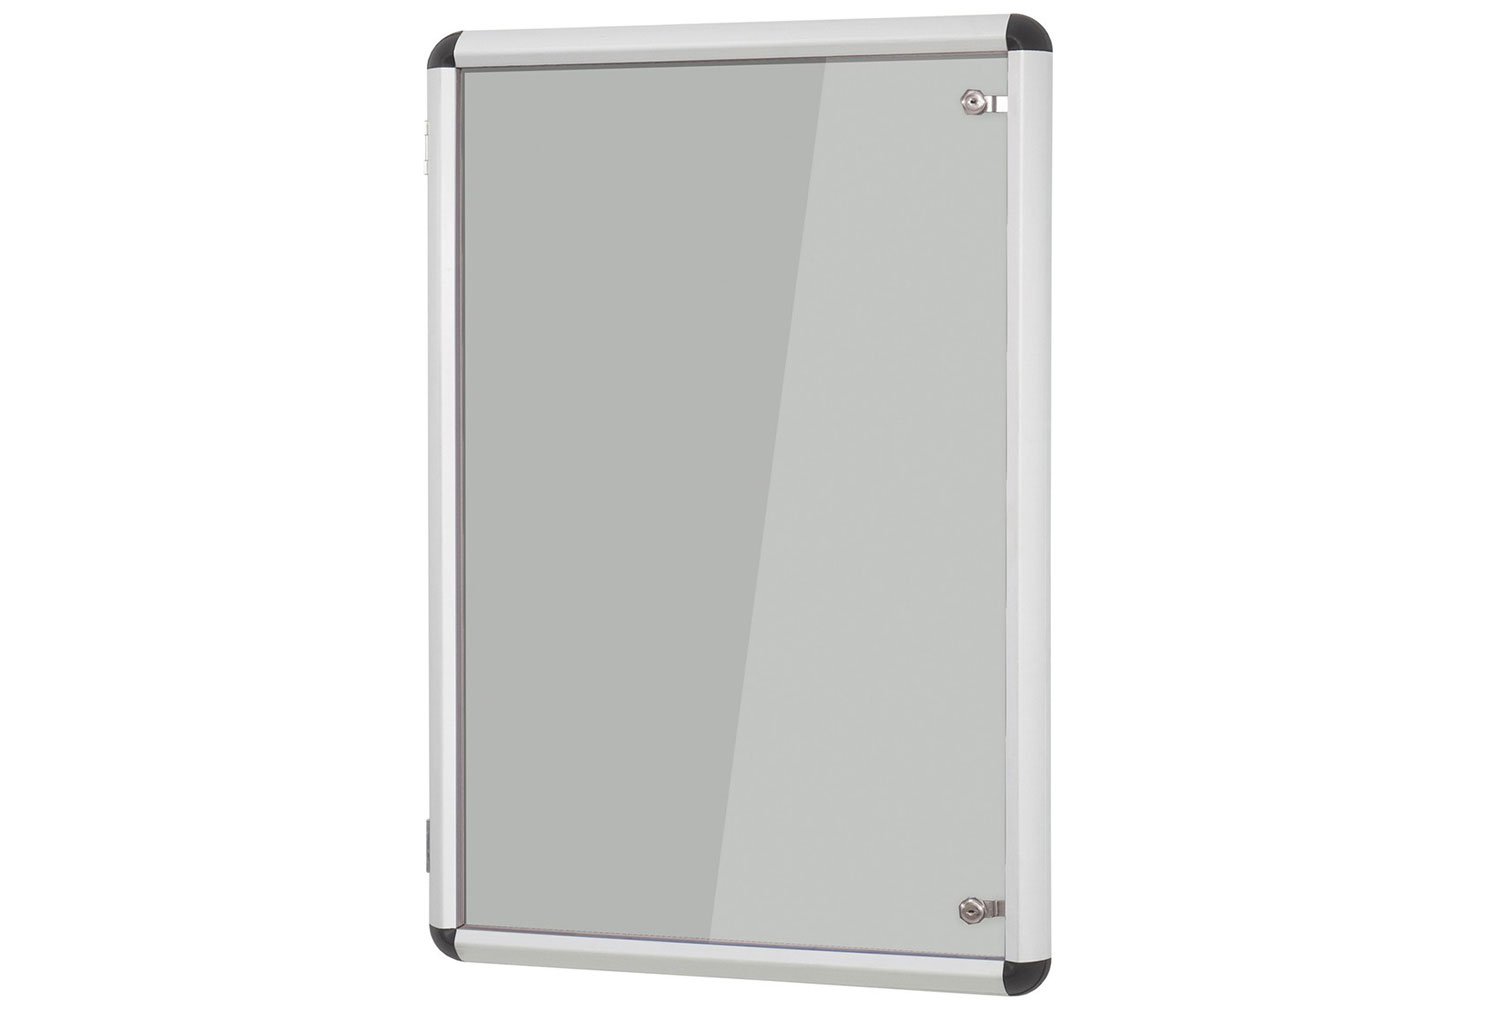 Shield Design Aluminium Framed Tamperproof Noticeboard, 120wx90h (cm), Light Grey